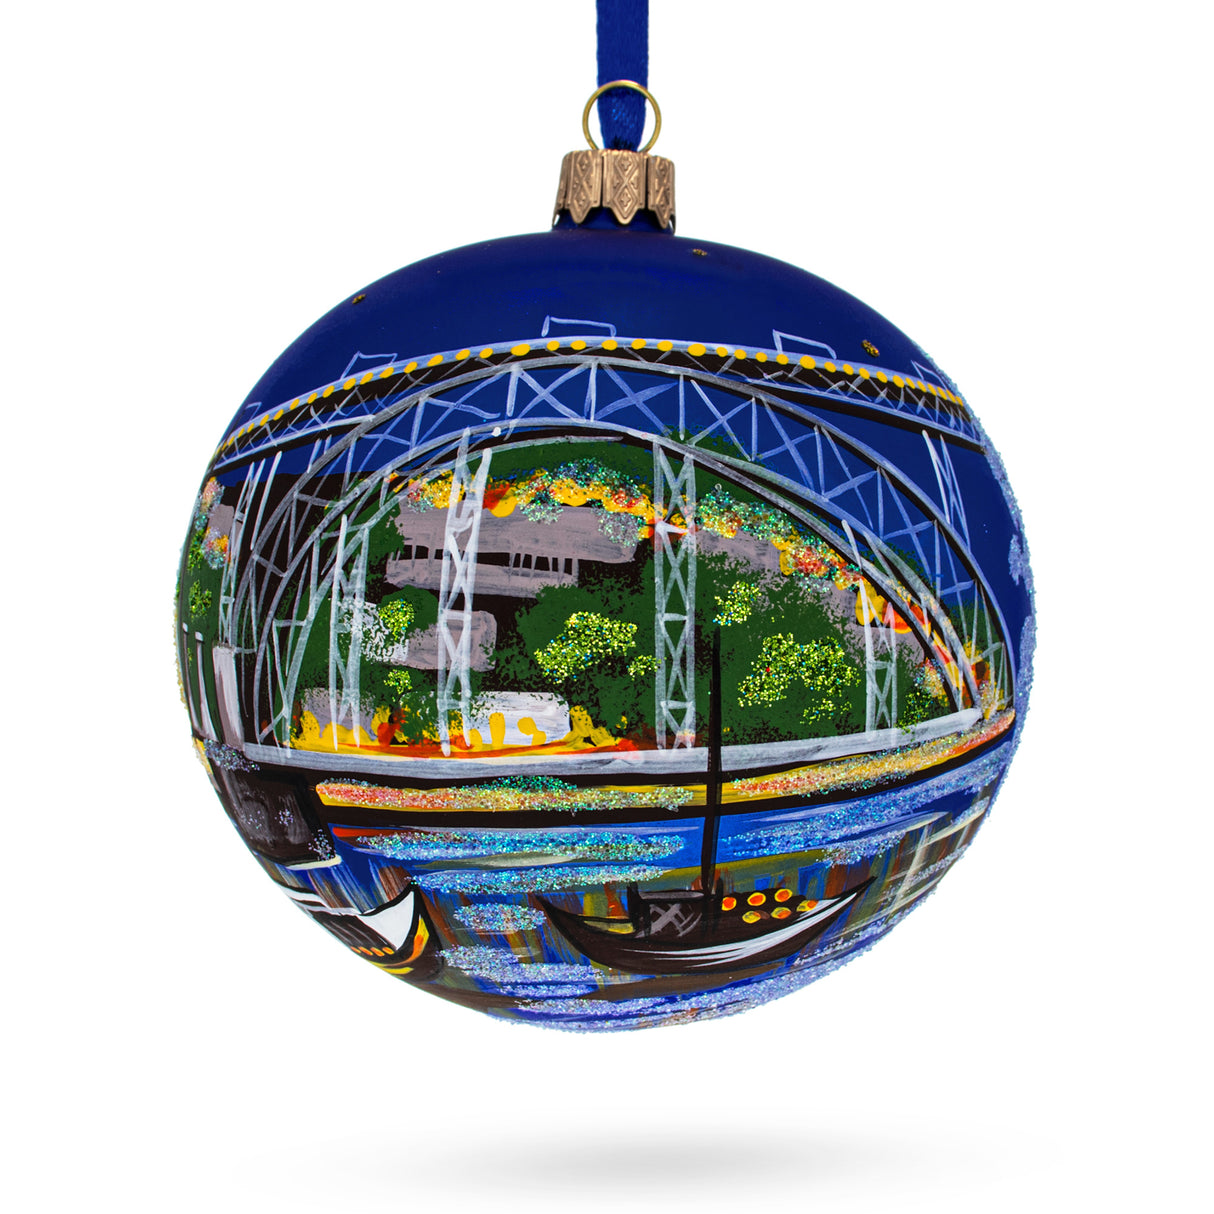 Copacabana, Rio de Janeiro, Brazil Glass Ball Christmas Ornament 4 Inches